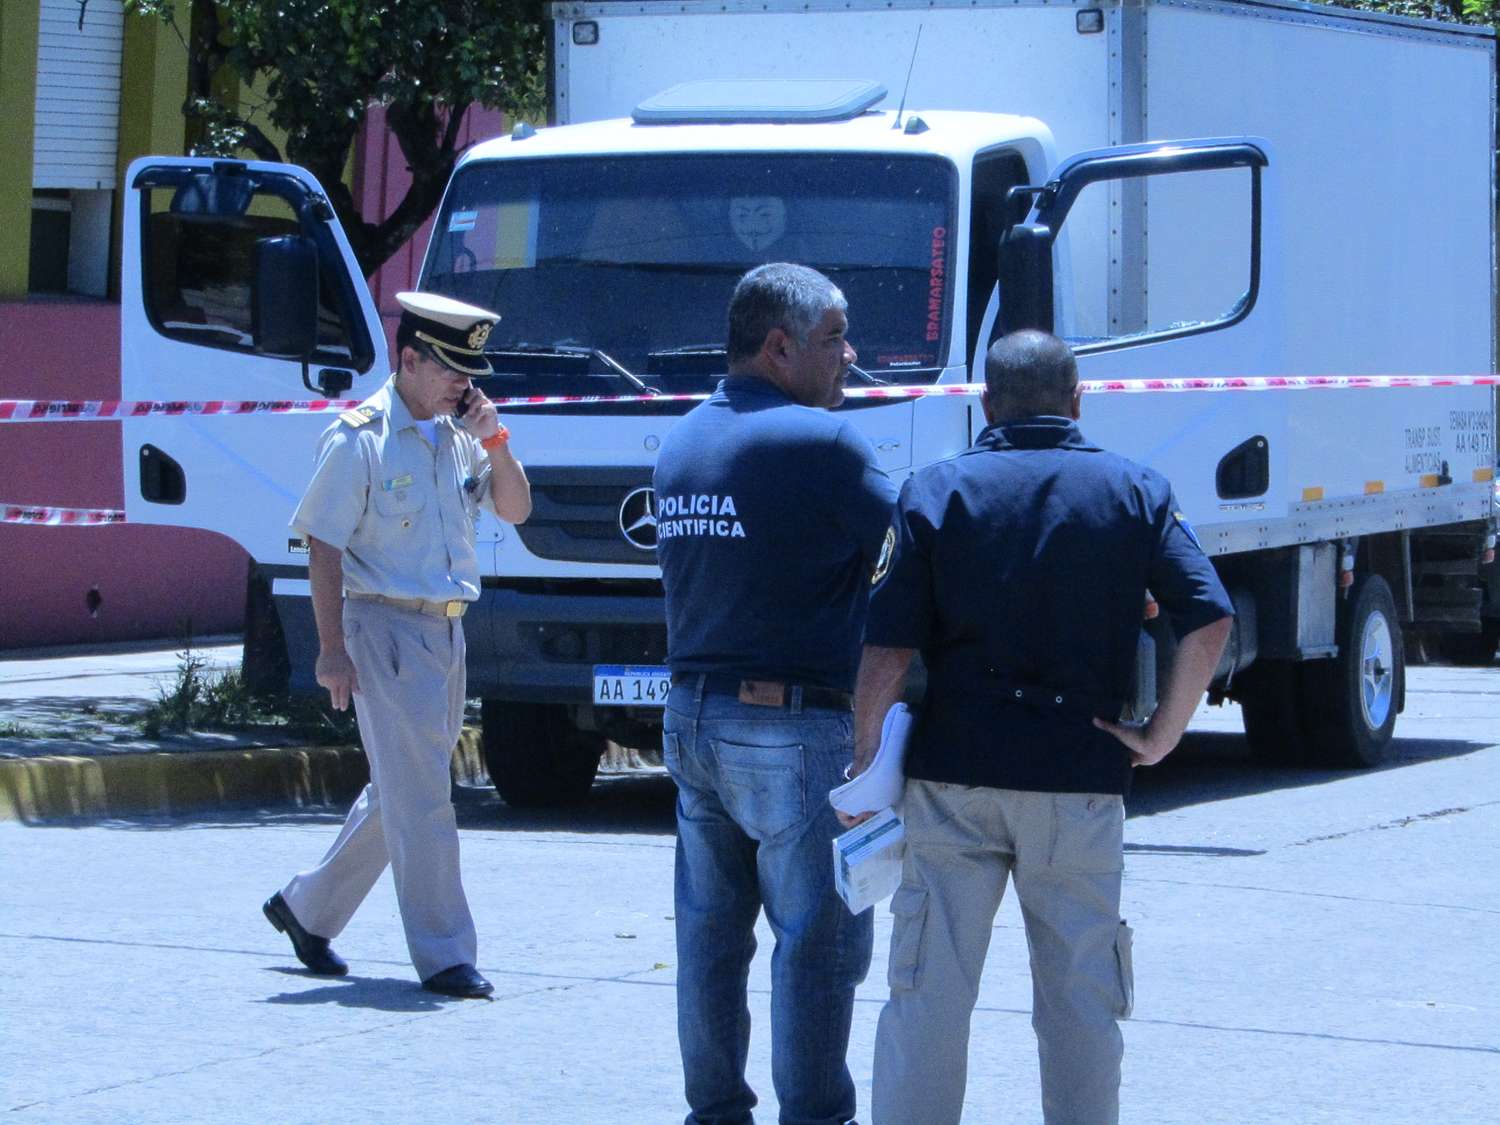 El caso Lillo va a juicio sin datos sobre el “entregador” del camión ni de quién “aguantó” a Branto Ayala